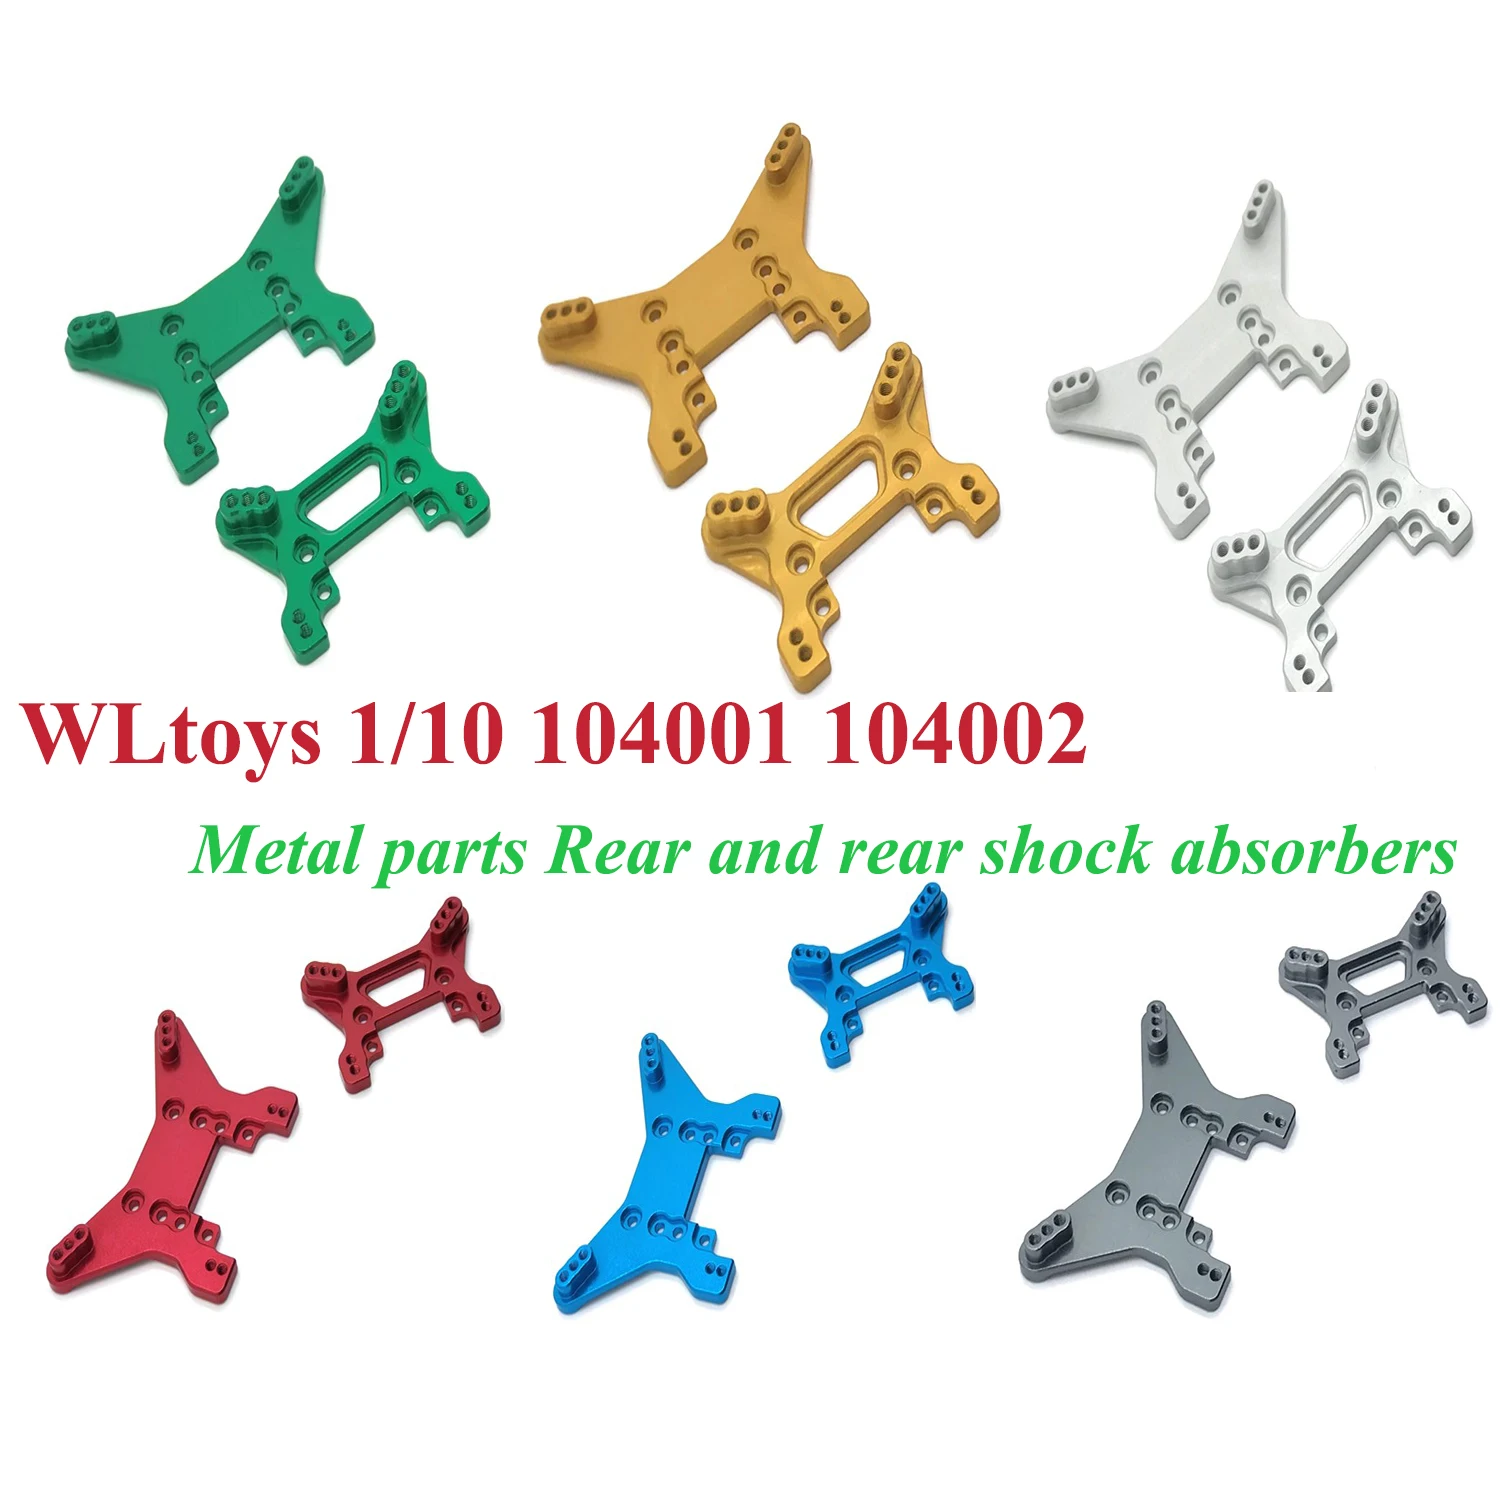 WLtoys 1/10 104001 104002 резервни Части за радиоуправляеми коли с дистанционно, Метални подкрепа на преден и заден амортисьор